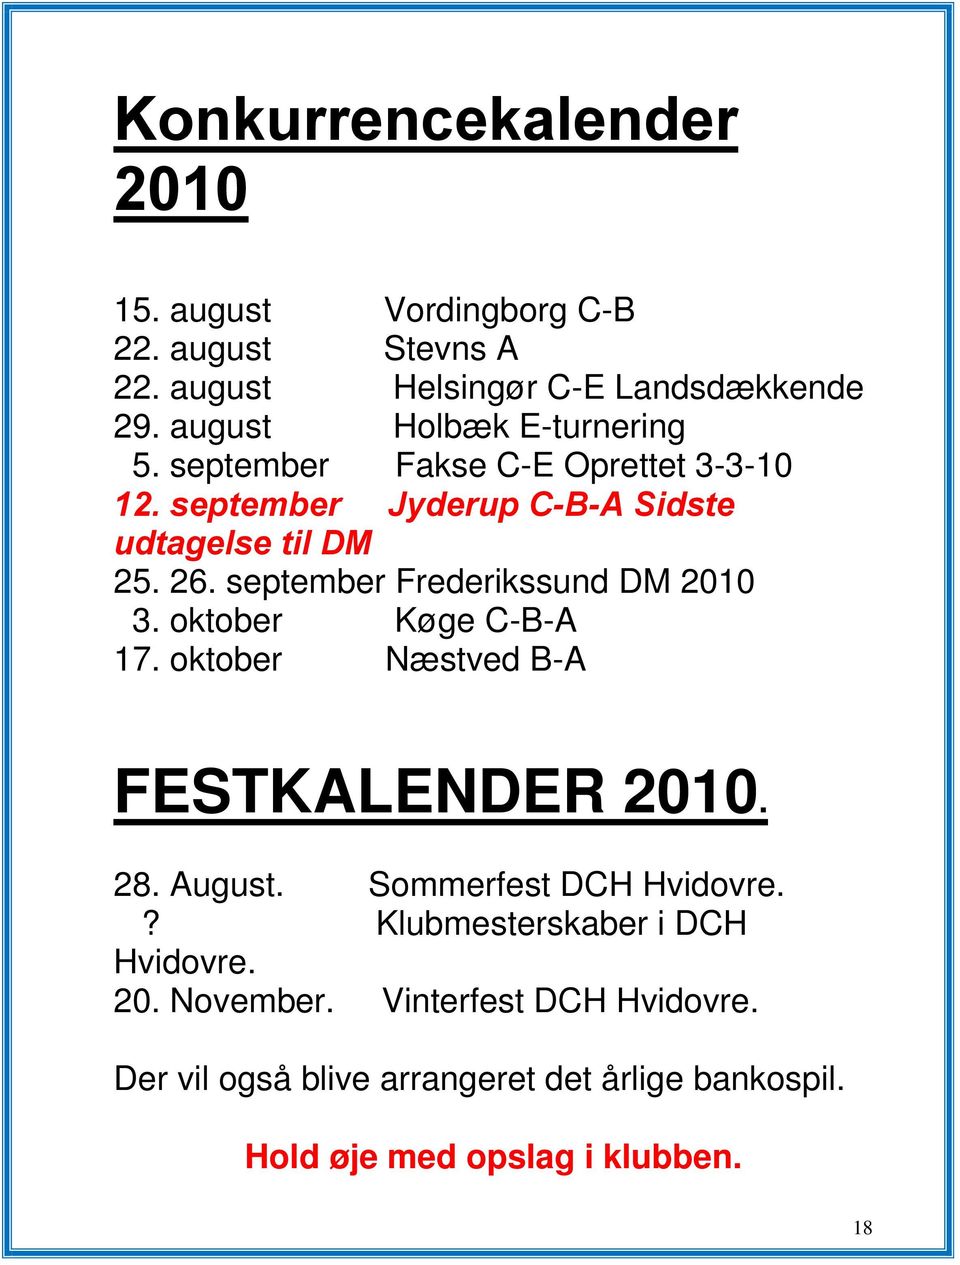 september Frederikssund DM 2010 3. oktober Køge C-B-A 17. oktober Næstved B-A FESTKALENDER 2010. 28. August. Sommerfest DCH Hvidovre.